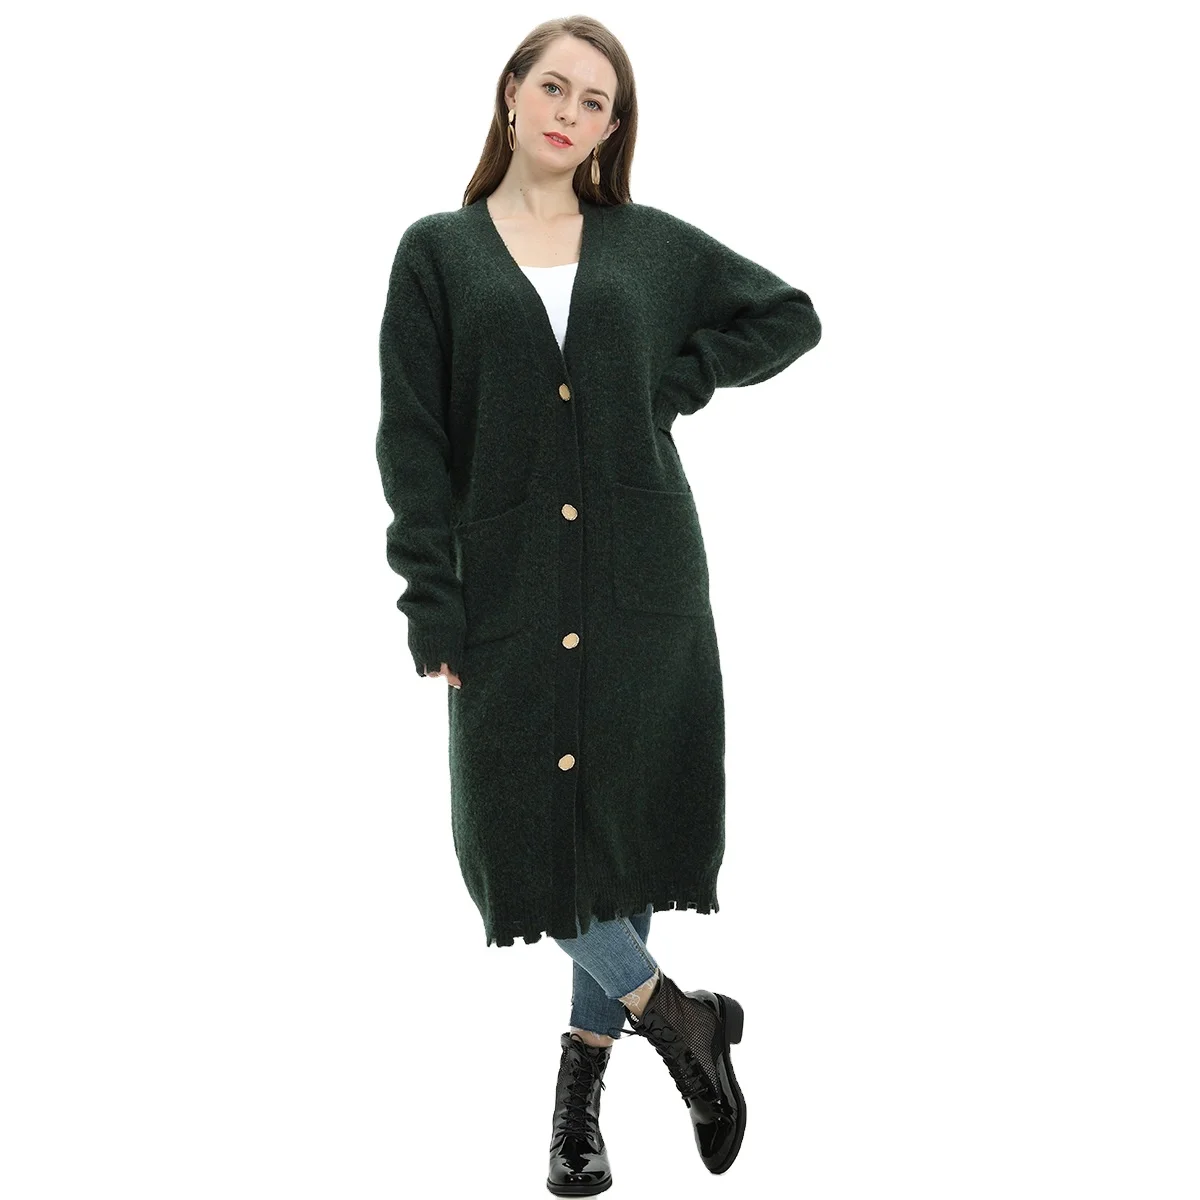 2020 оптовая продажа; Модное популярное рекомендуем в винтажном стиле колледж свитер для повседневной носки женские длинный кардиган рабочая одежда пальто свитер (1600059264911)